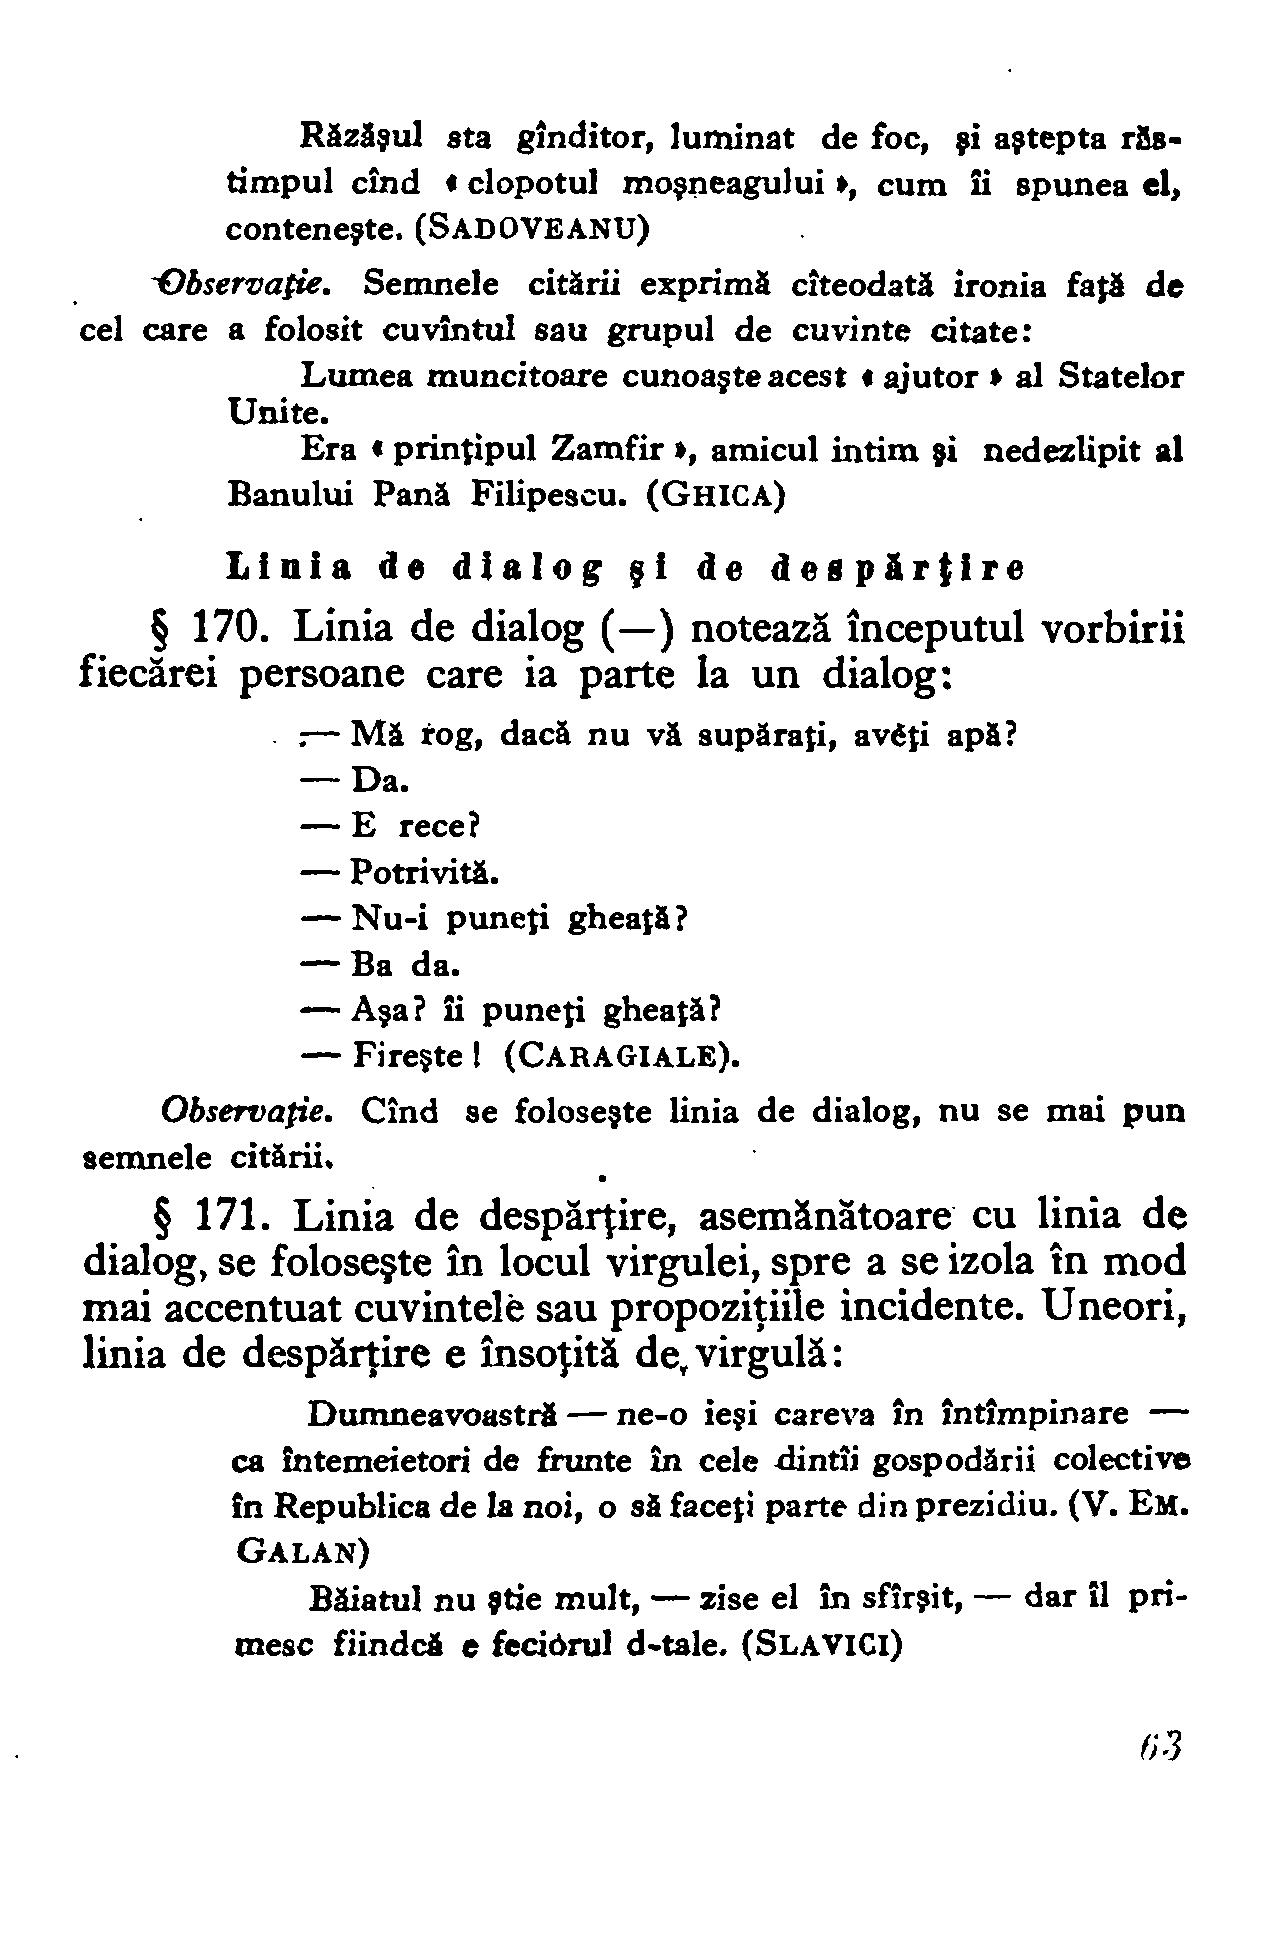 1954 - Mic dicționar ortografic (61).png